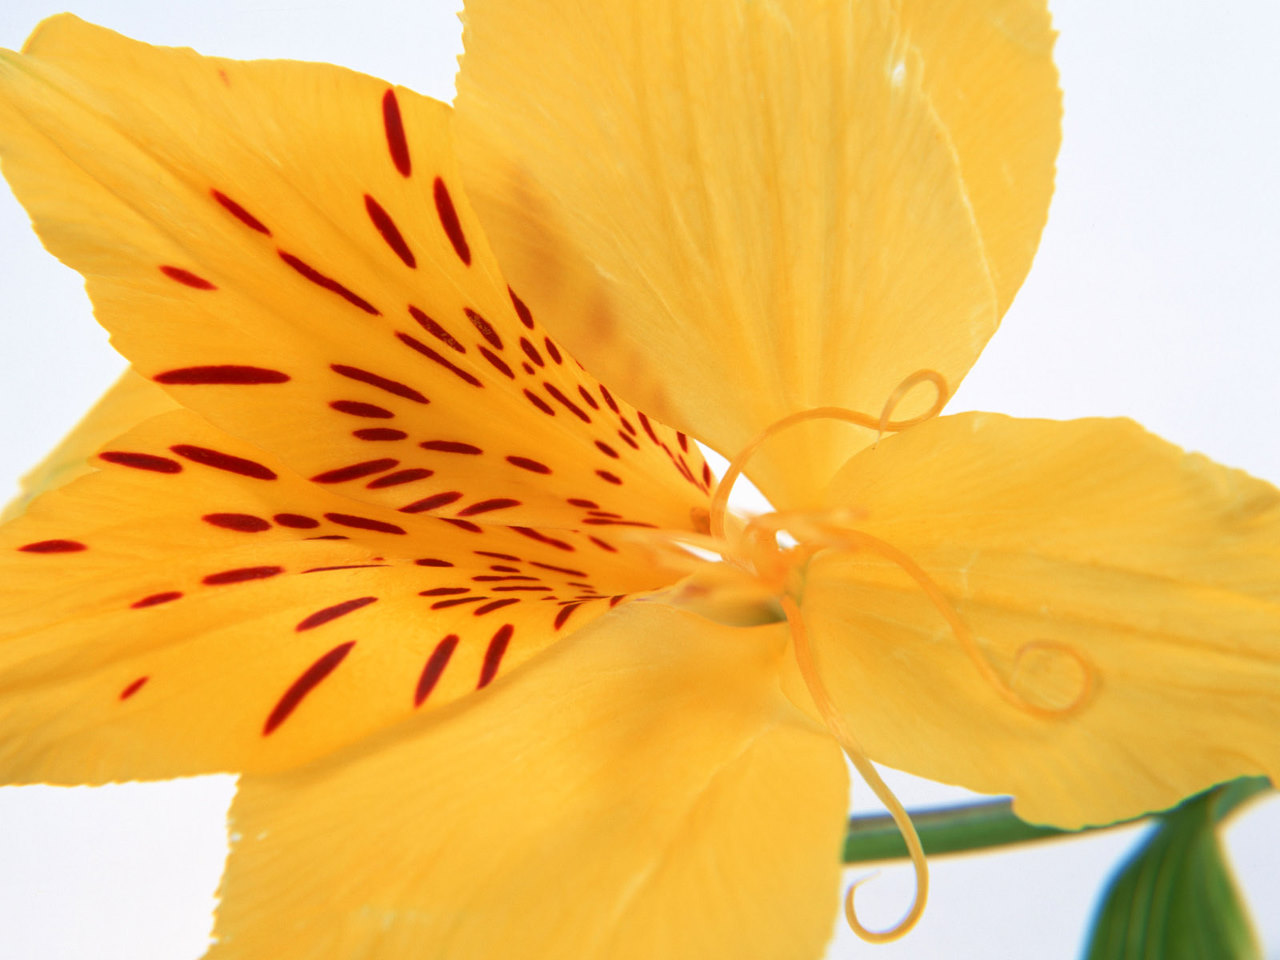 http://2.bp.blogspot.com/_uTGKd6u5pJ4/TRlK9yu3euI/AAAAAAAAAO8/Yg3DRAa5YTg/s1600/Yellow-Daffodil-Flower-Wallpaper.jpg